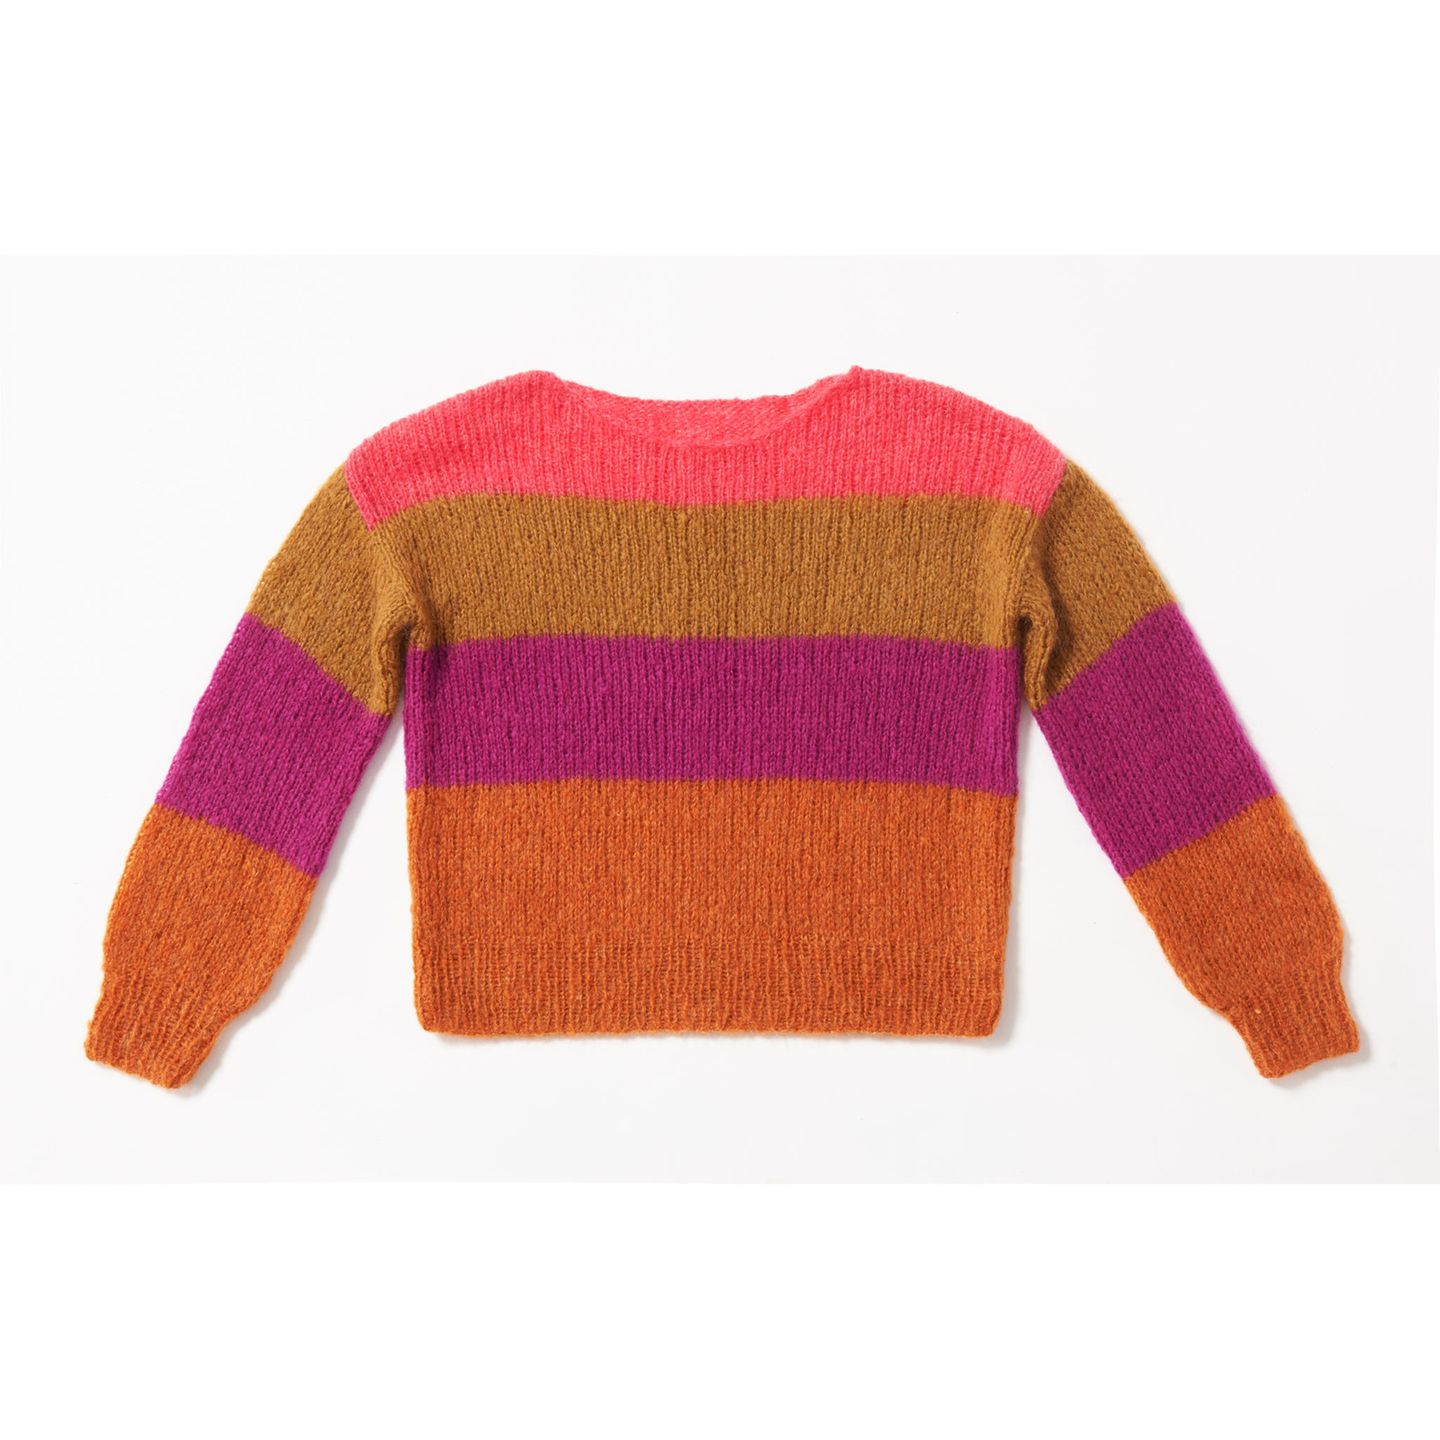 Color-Block-Pullover stricken: ein Pullover mit breiten bunten Streifen